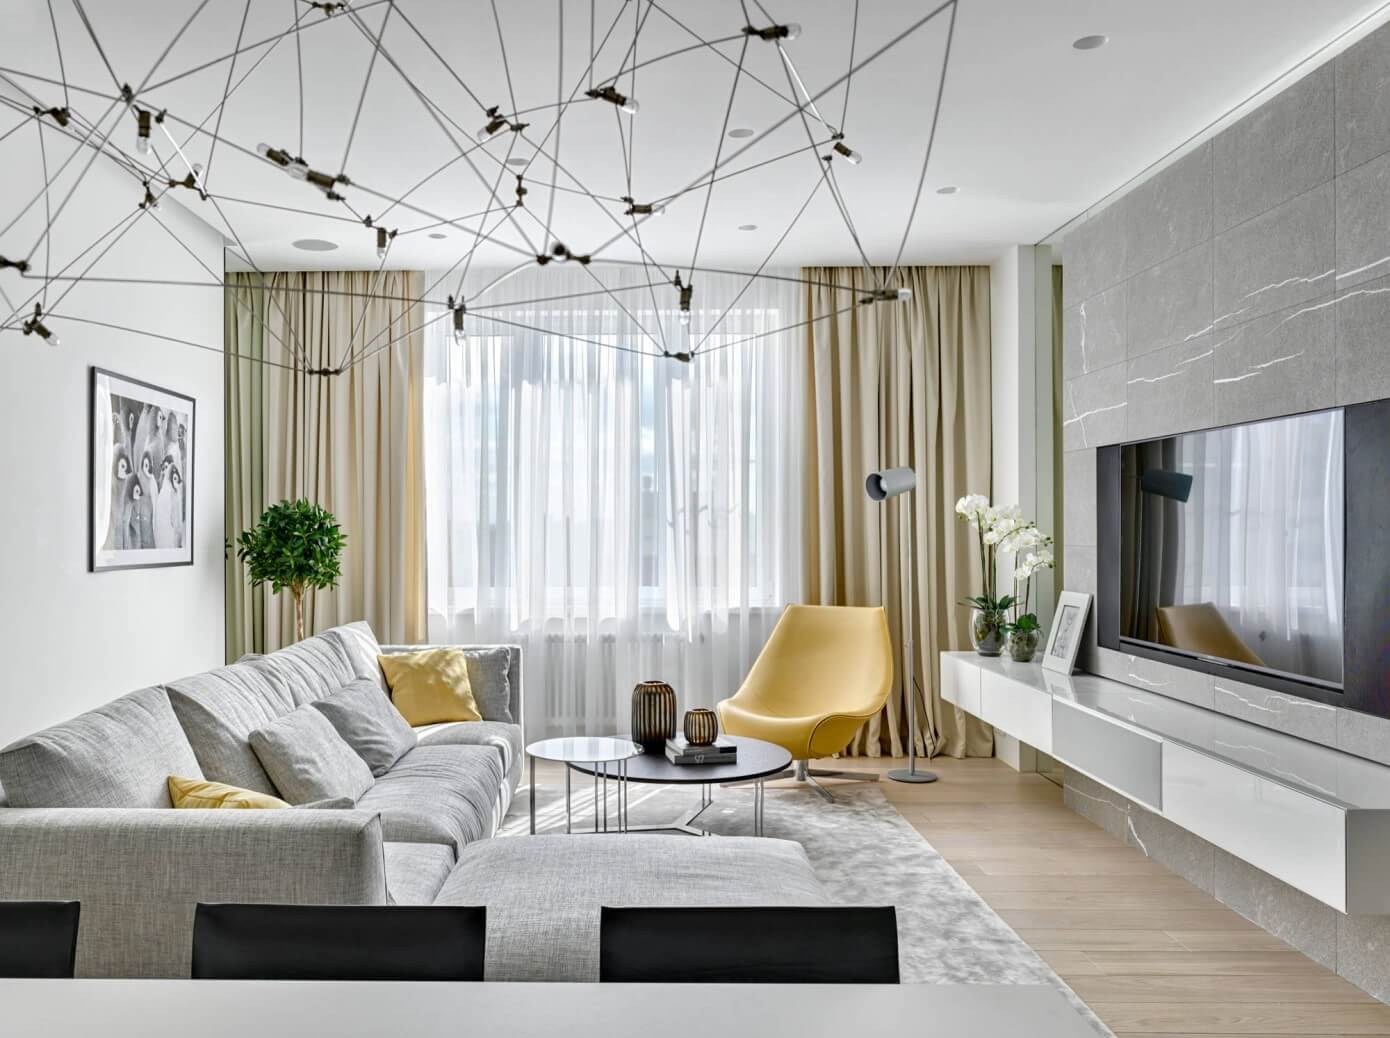 Stoletova Street Apartment by Alexandra Fedorova